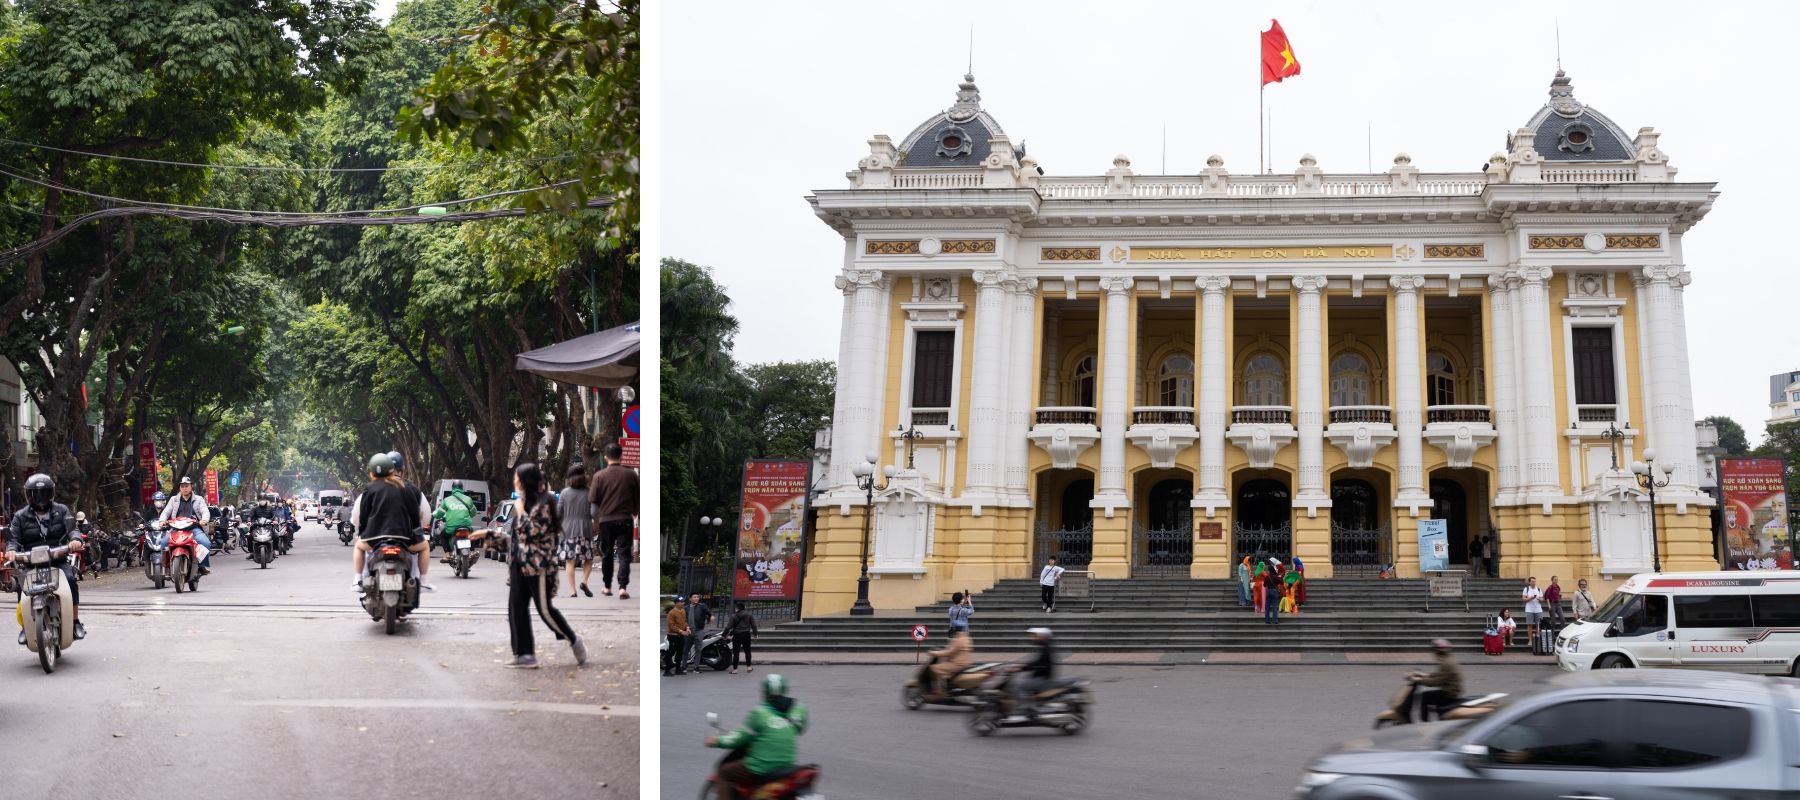 今でもバイクはハノイ市民の主要な交通手段だが、自動車も増えている（左）／1911年に完成し、100年以上の歴史を誇るハノイ歌劇場。発展を続けるハノイに今も残る古き良きベトナムを伝える建造物の1つ（右）の画像